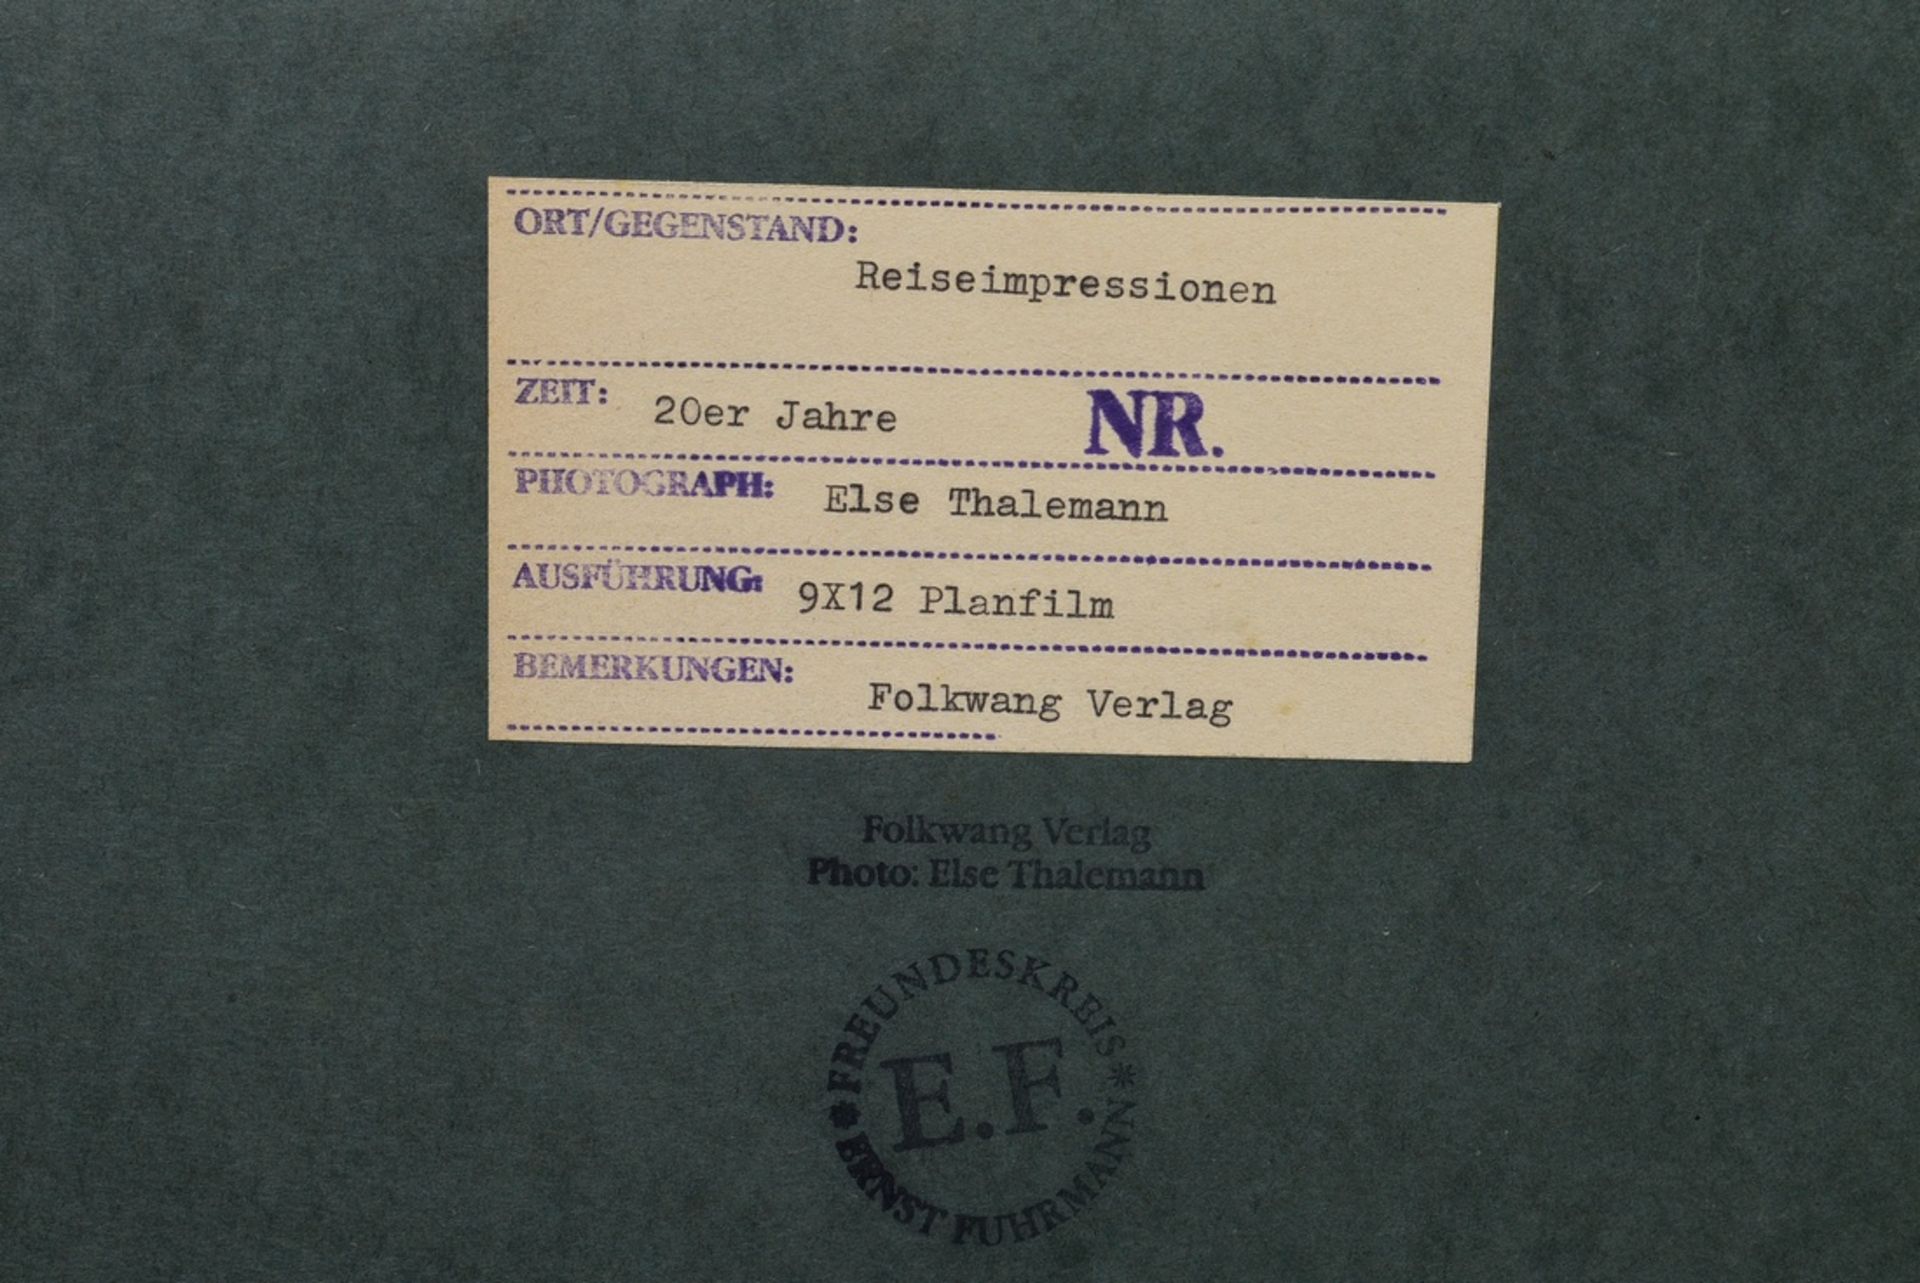 2 Thalemann, Else (1901-1985) "Reiseimpressionen, Warten", Fotografien auf Karton montiert, verso b - Bild 4 aus 5